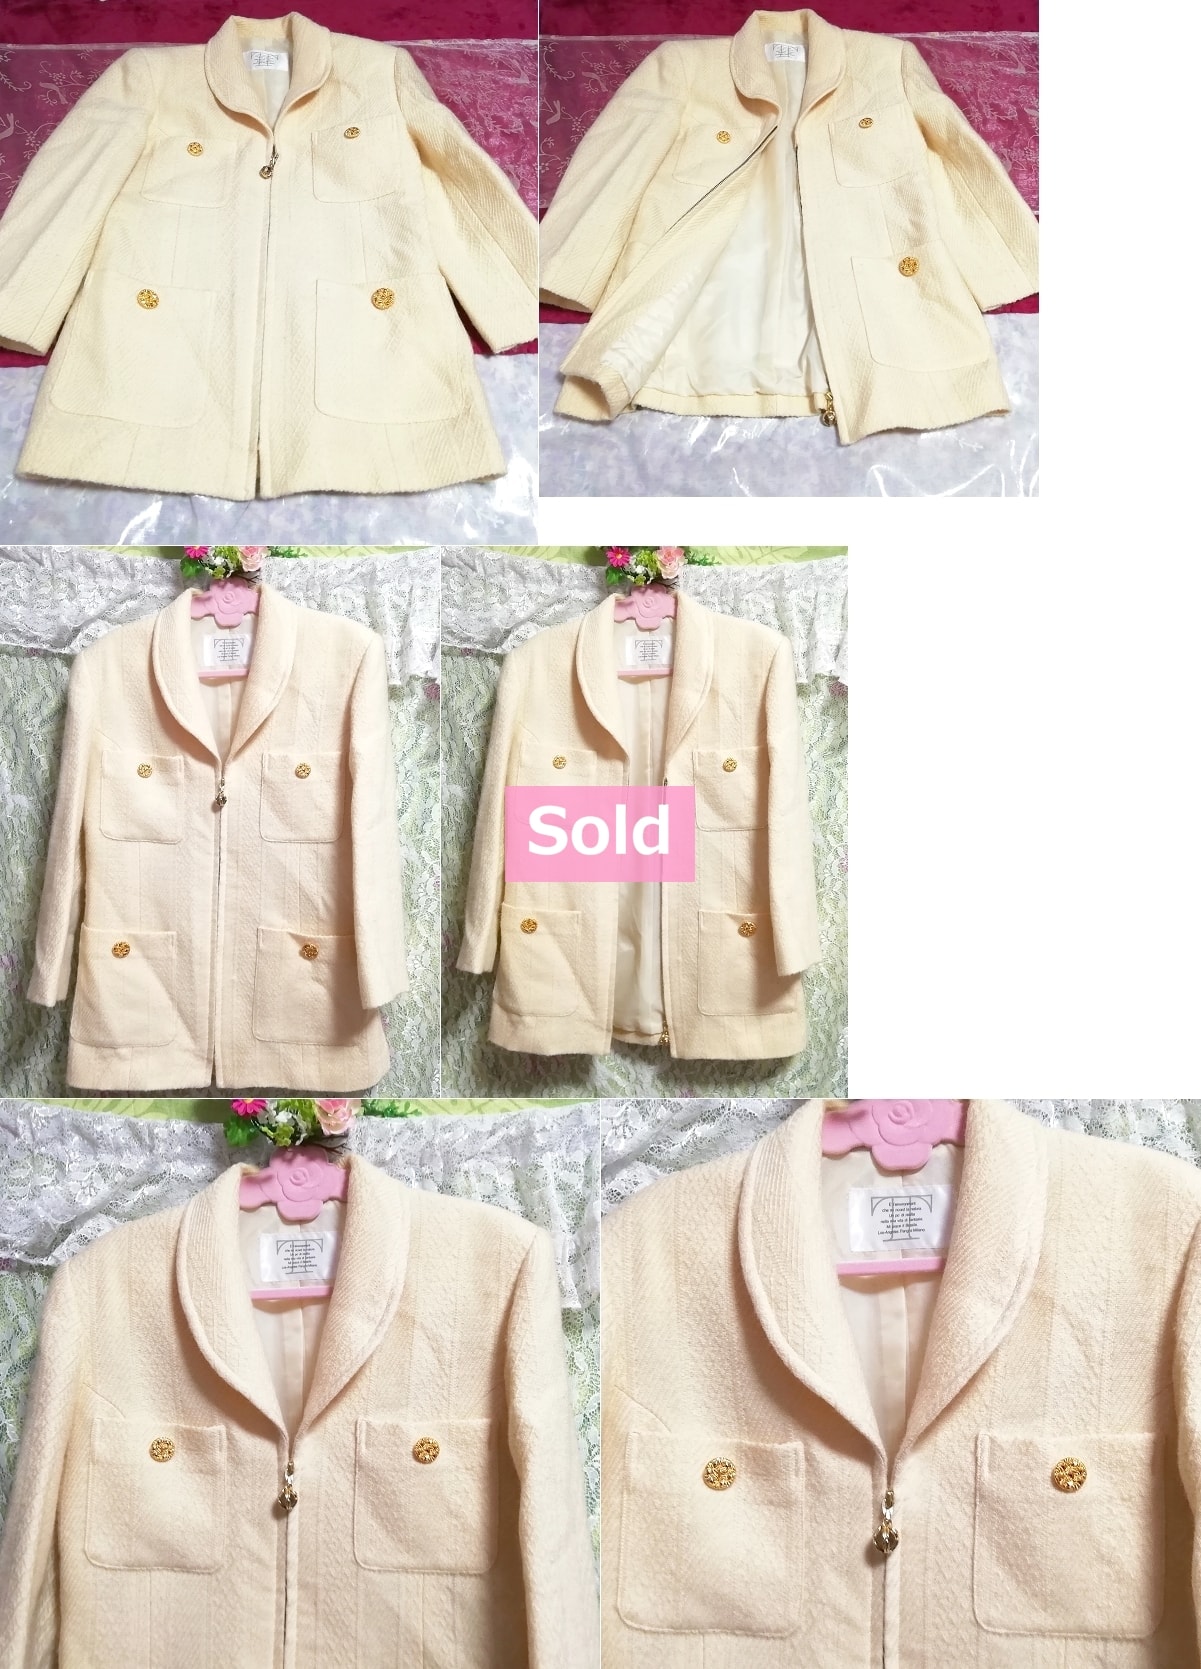 白フローラルホワイトエレガント綺麗ボタンショートコート/外套/日本製 Floral white elegant button short coat/jacket/made in Japan, コート&コート一般&Mサイズ